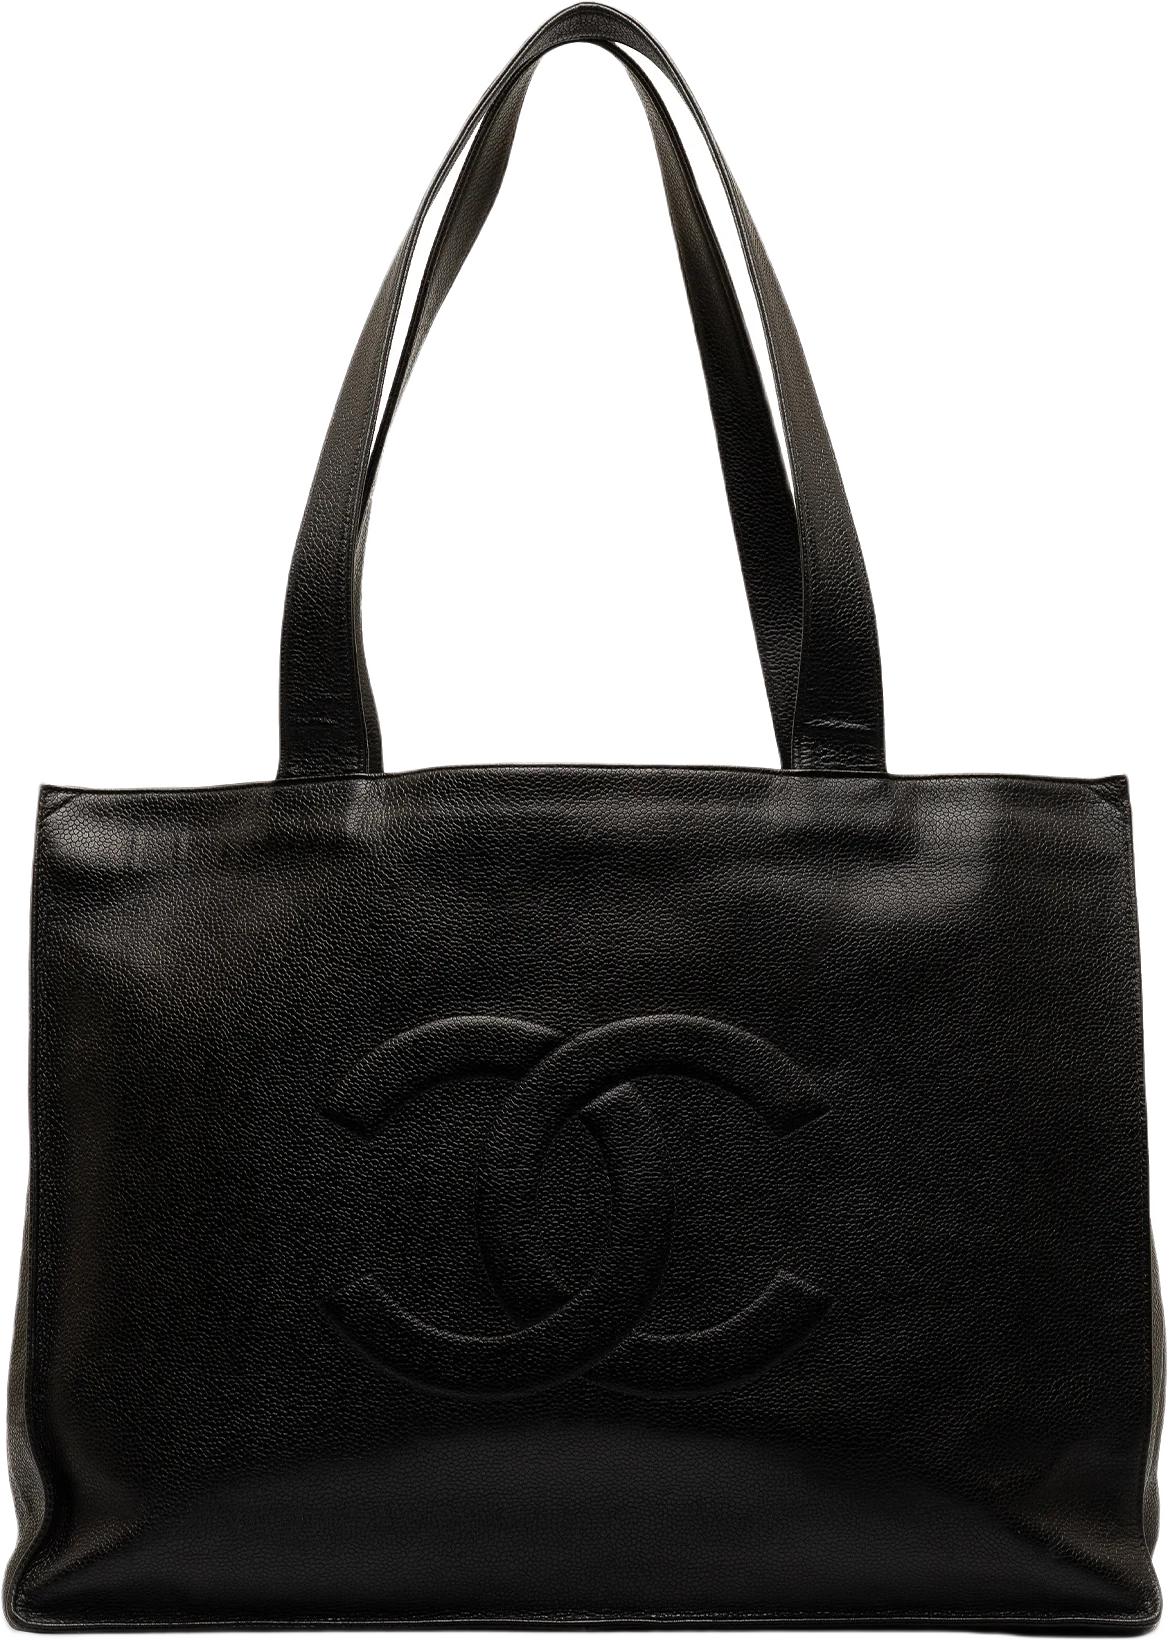 Chanel Caviar Cc Tote Bag